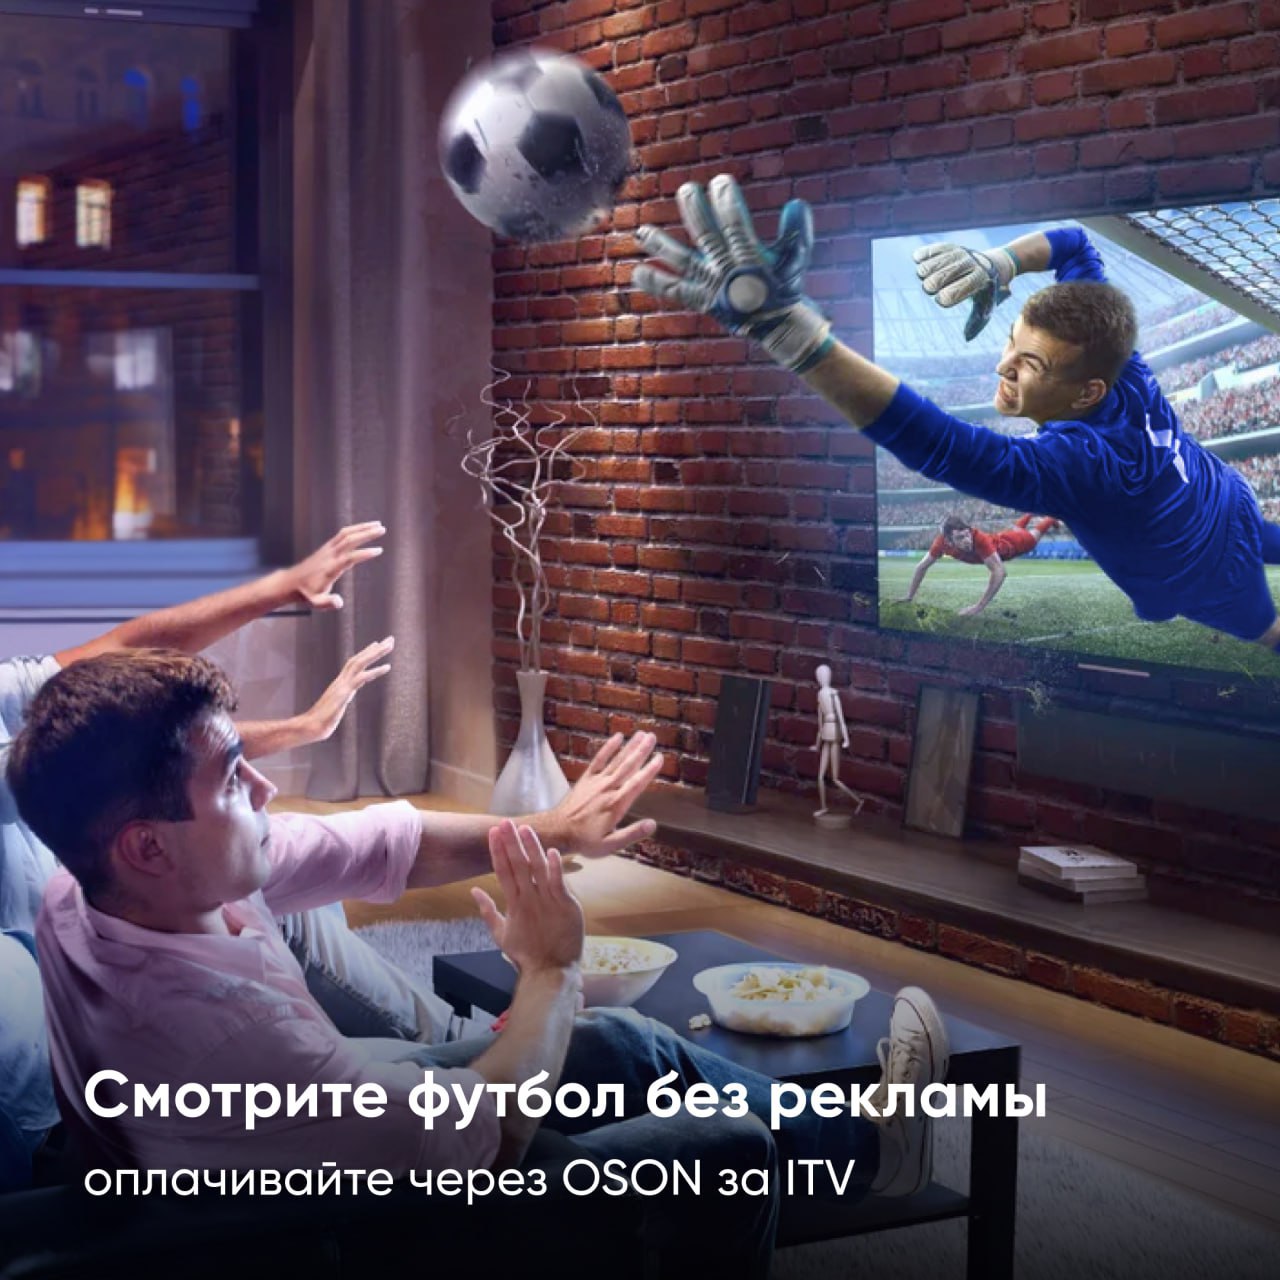 Futbol o'yinlaridagi reklama tanaffuslaridan charchadingizmi?